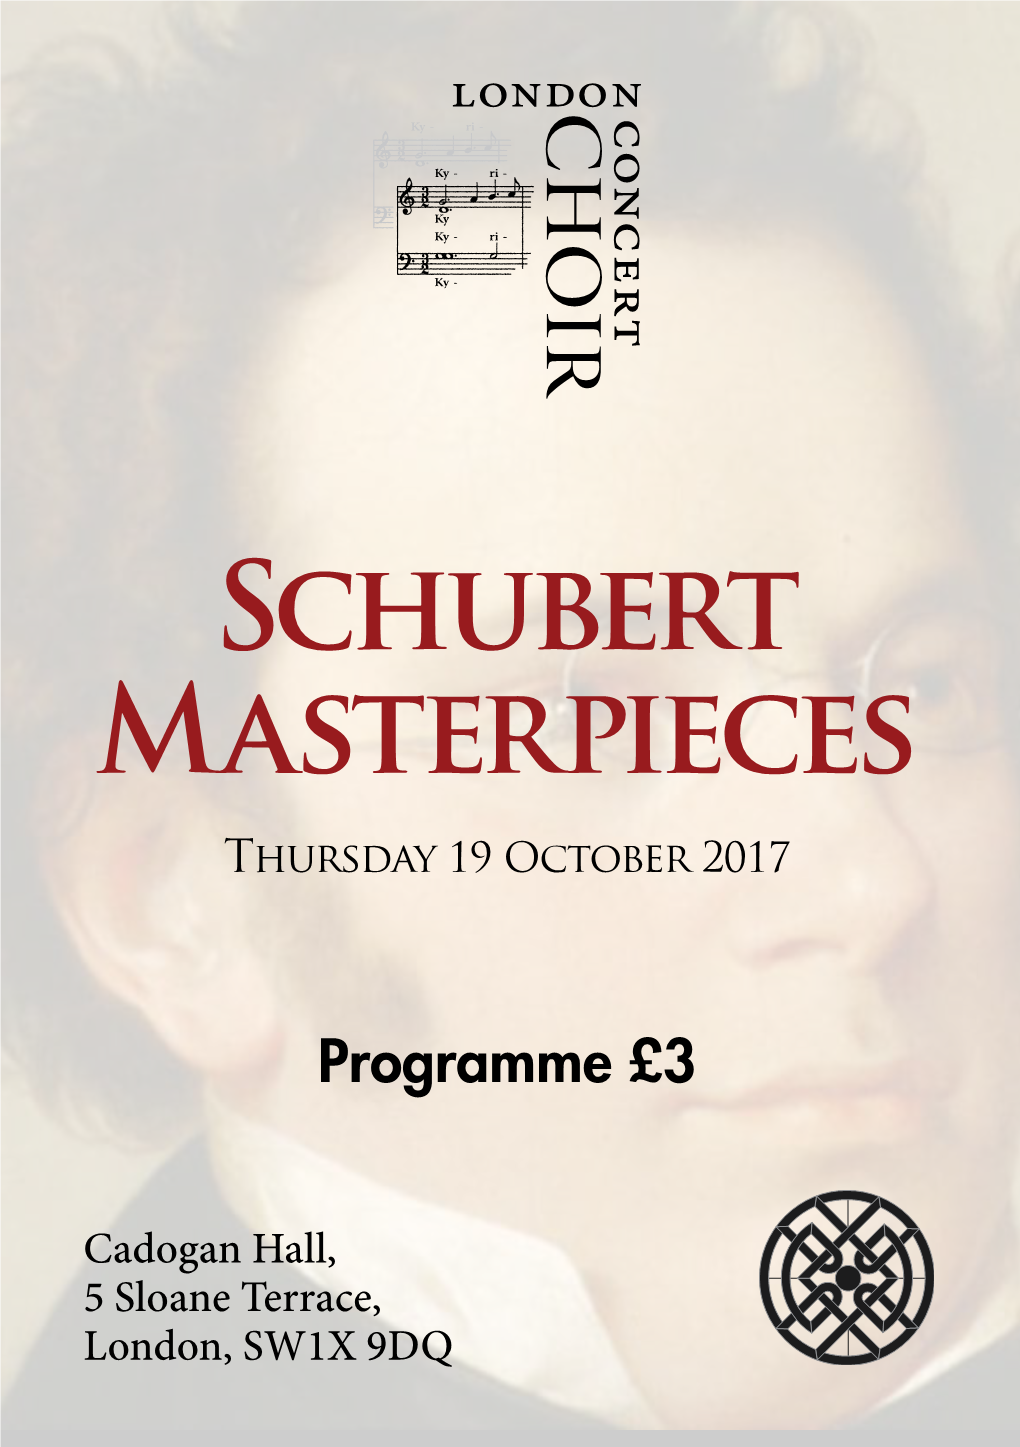 Schubert Masterpieces Thursday 19 October 2017